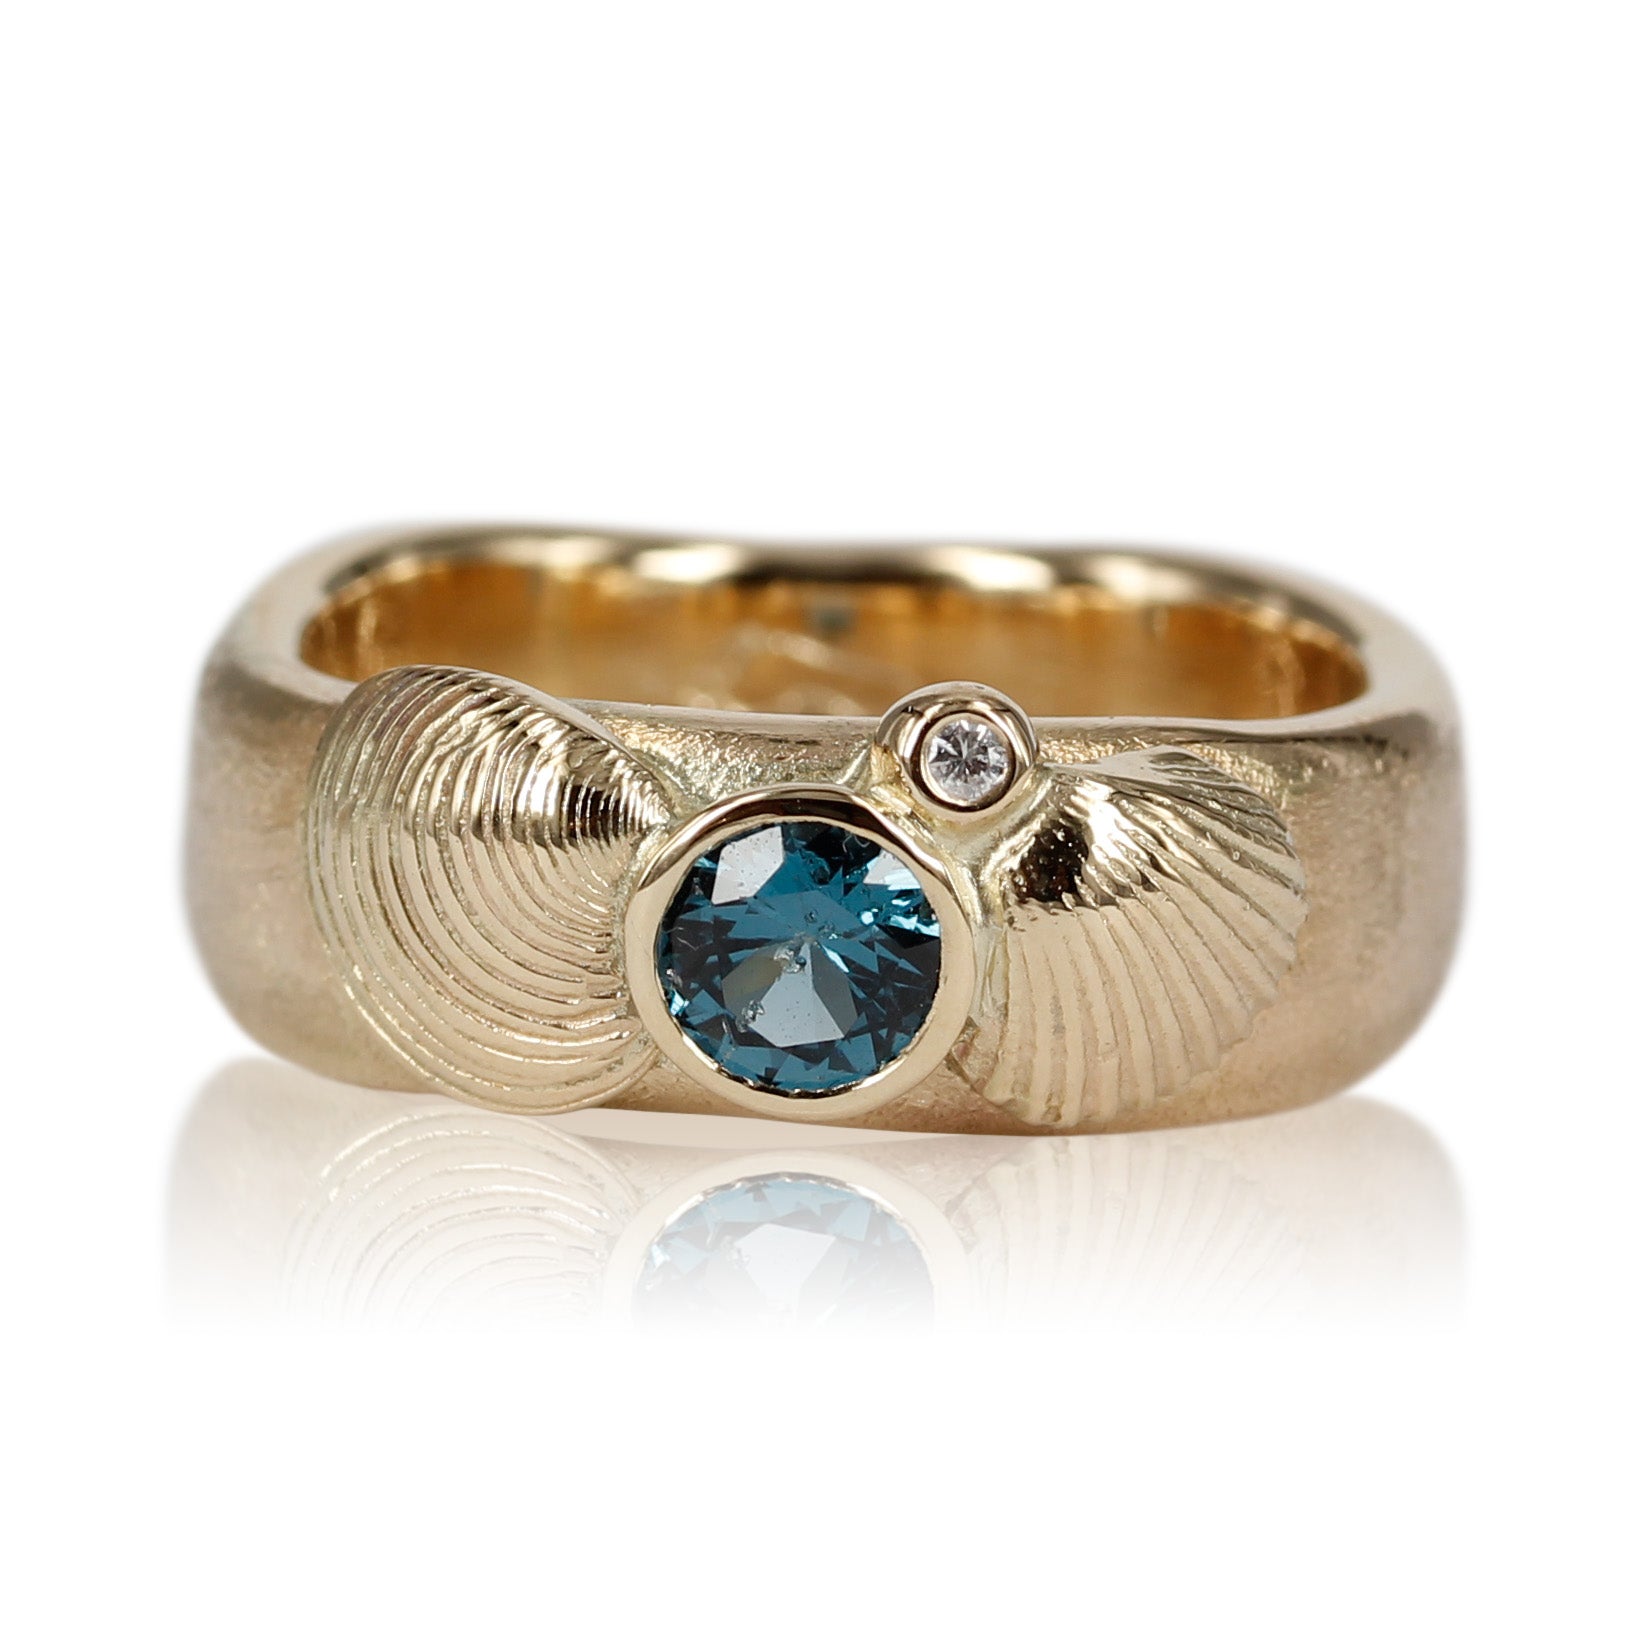 Speciel designet ring med topas, diamant og fine muslinger fra guldsmed maiken pade